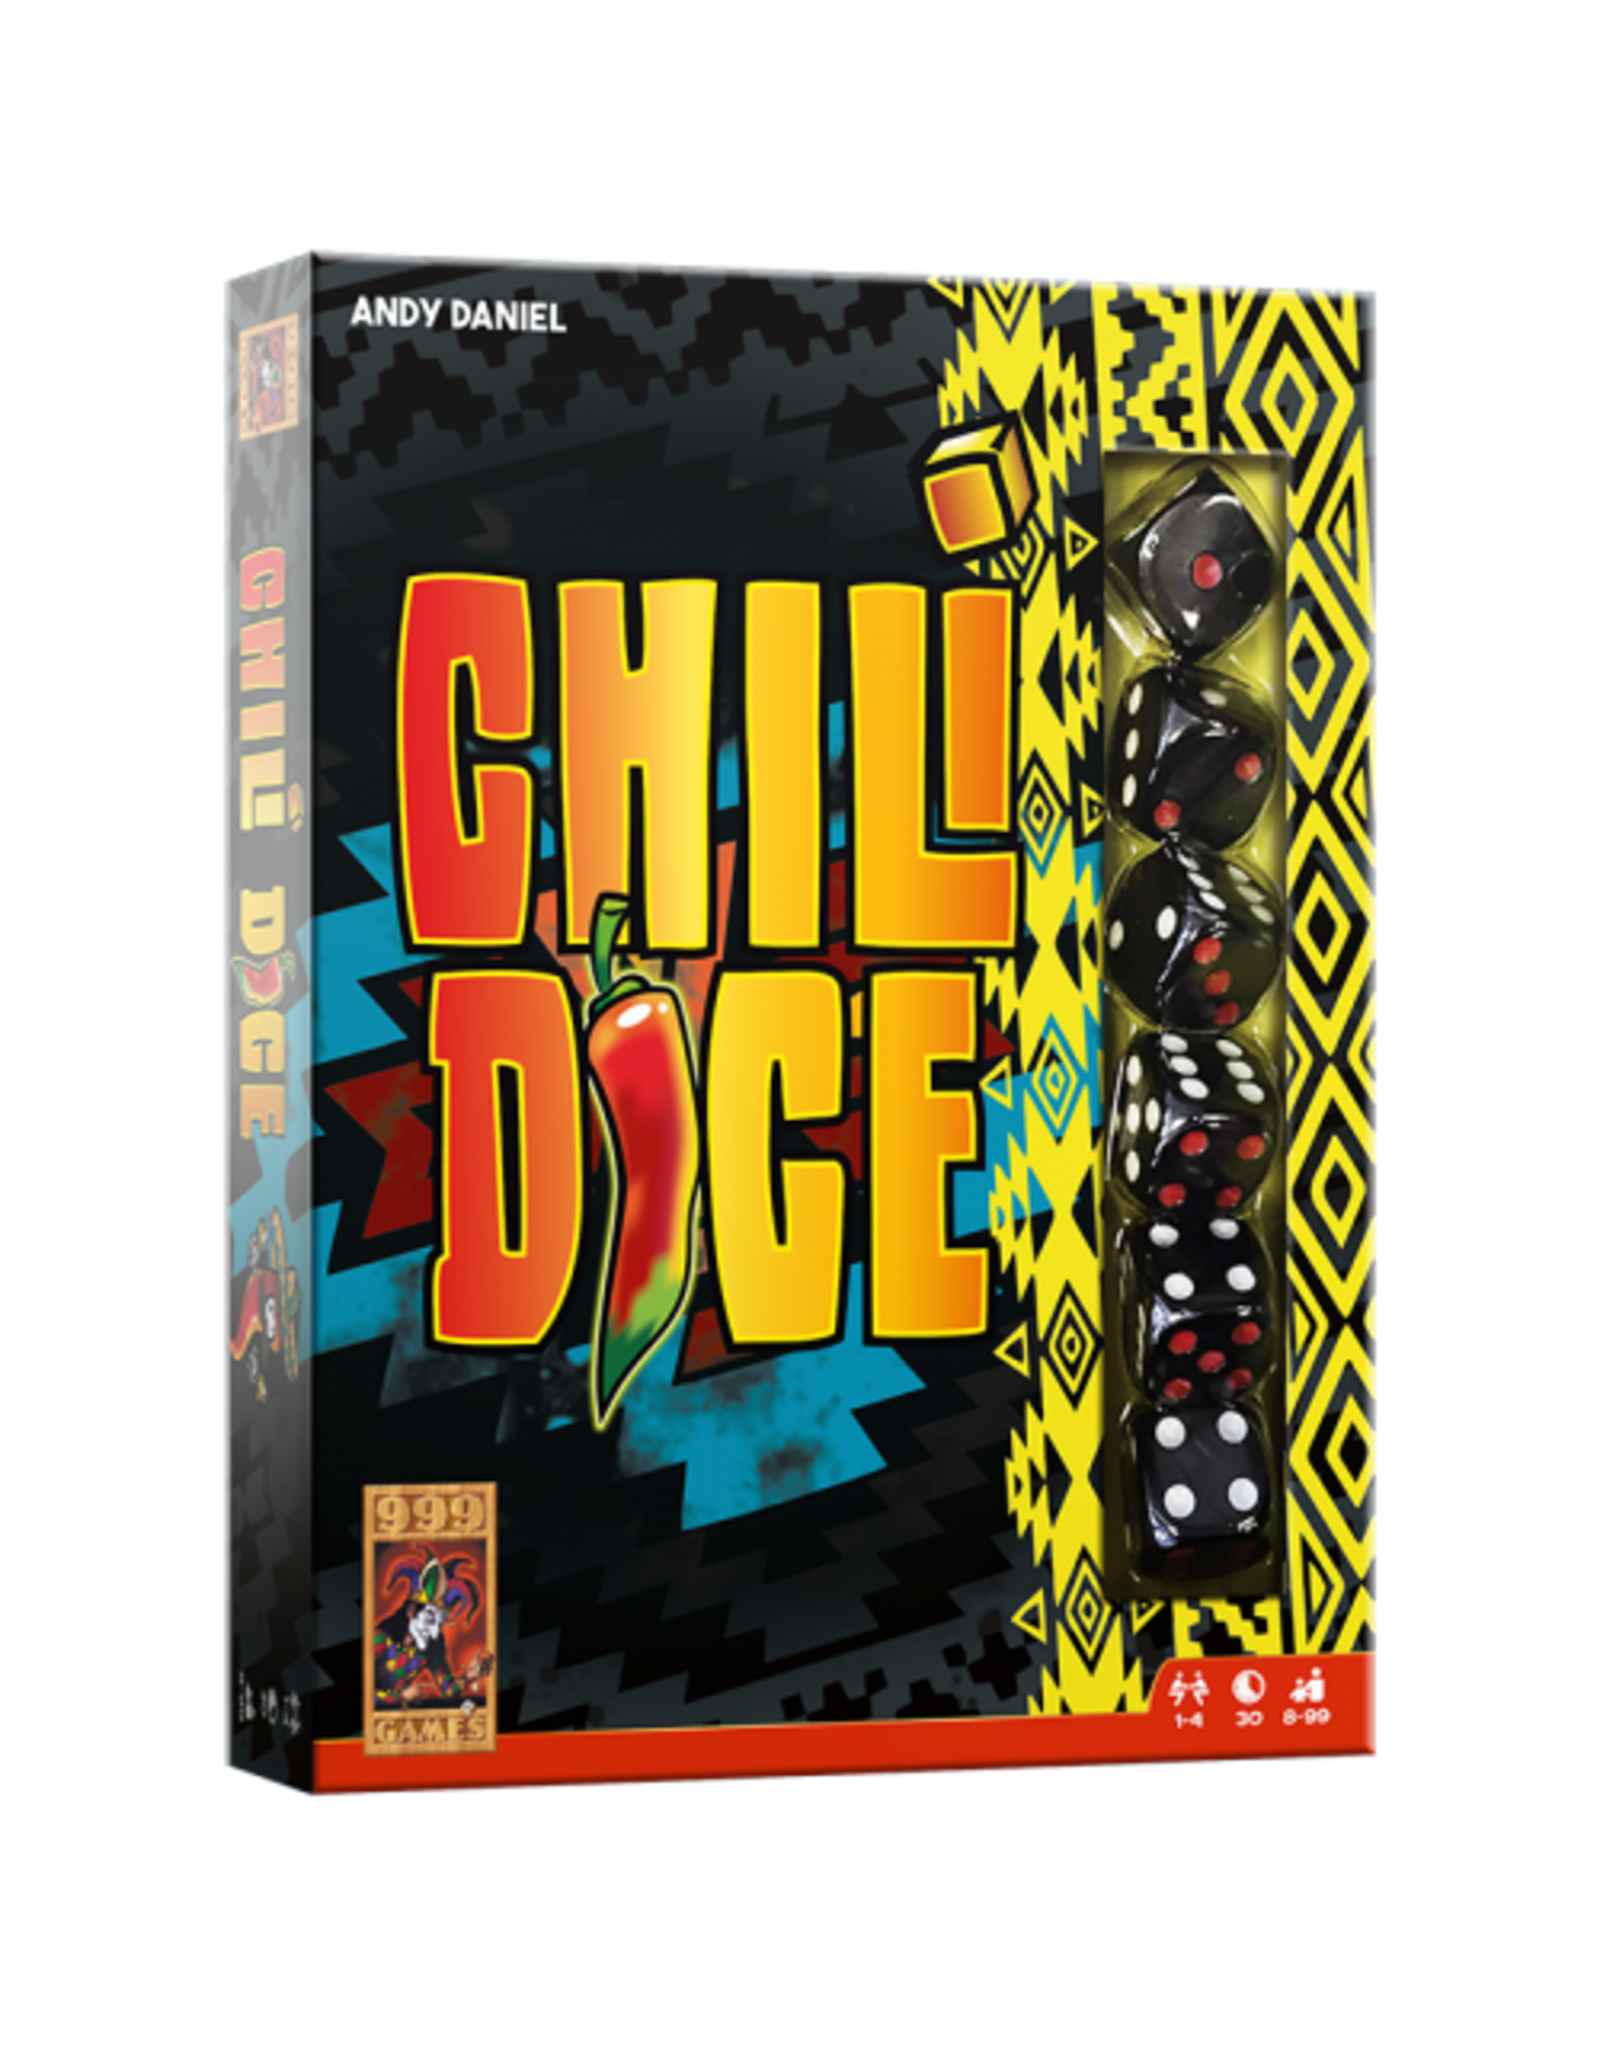 999 GAMES Chili Dice - Dobbelspel